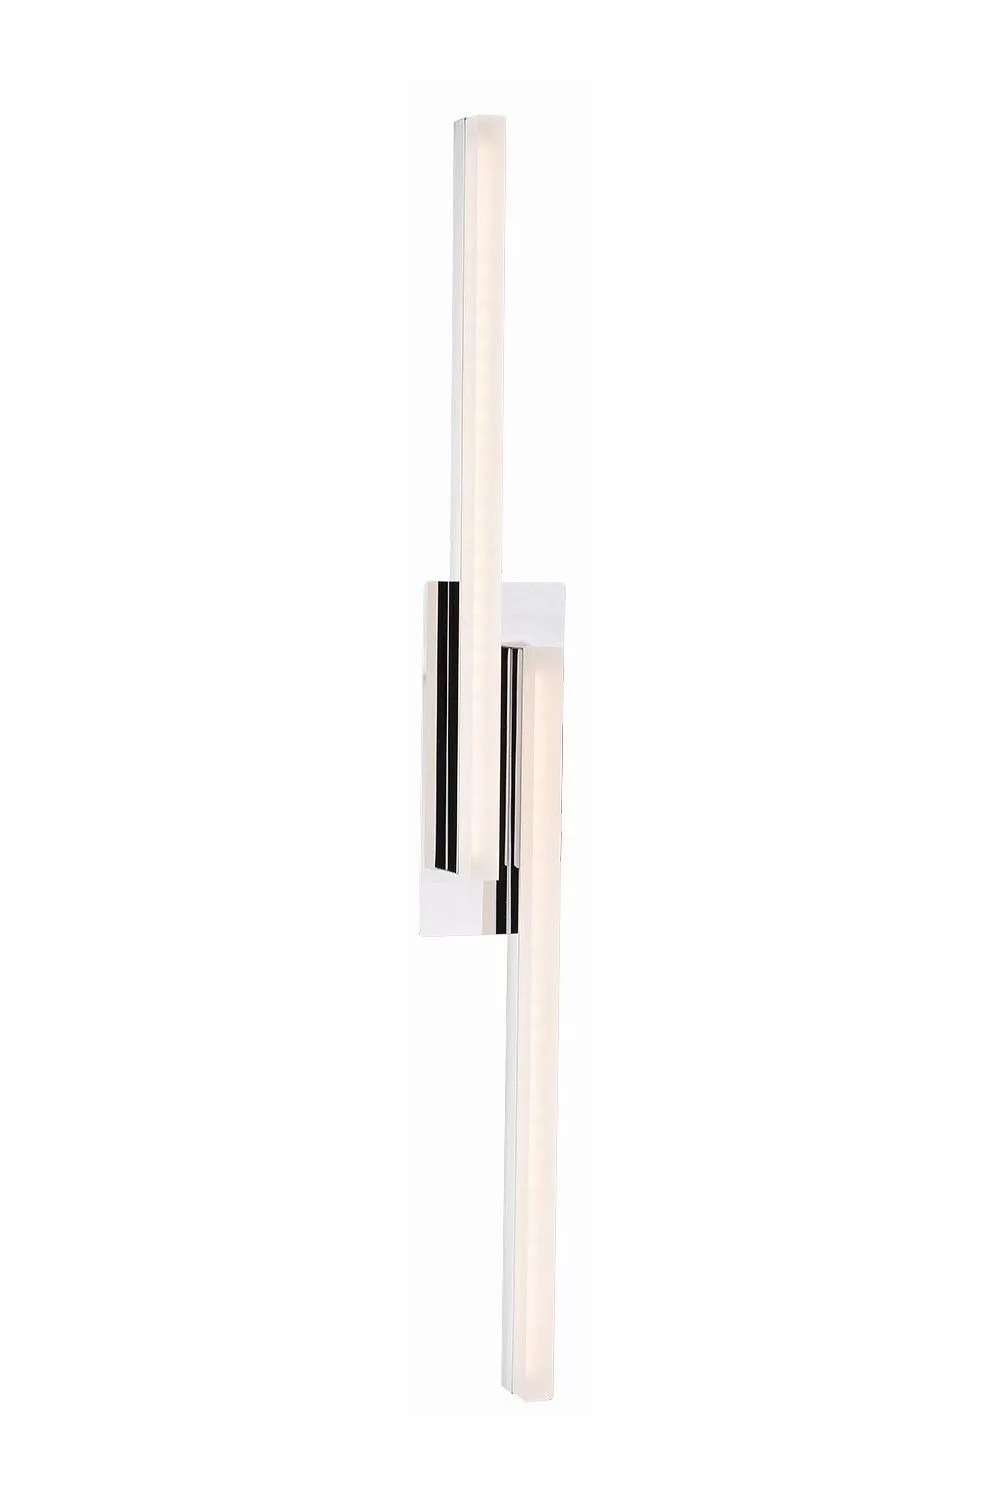   
                        
                        Світильник для ванної NOWODVORSKI (Польща) 23532    
                         у стилі Модерн.  
                        Тип джерела світла: вбудований led-модуль, незмінний.                                                 Кольори плафонів і підвісок: Білий.                         Матеріал: Акрил.                          фото 1